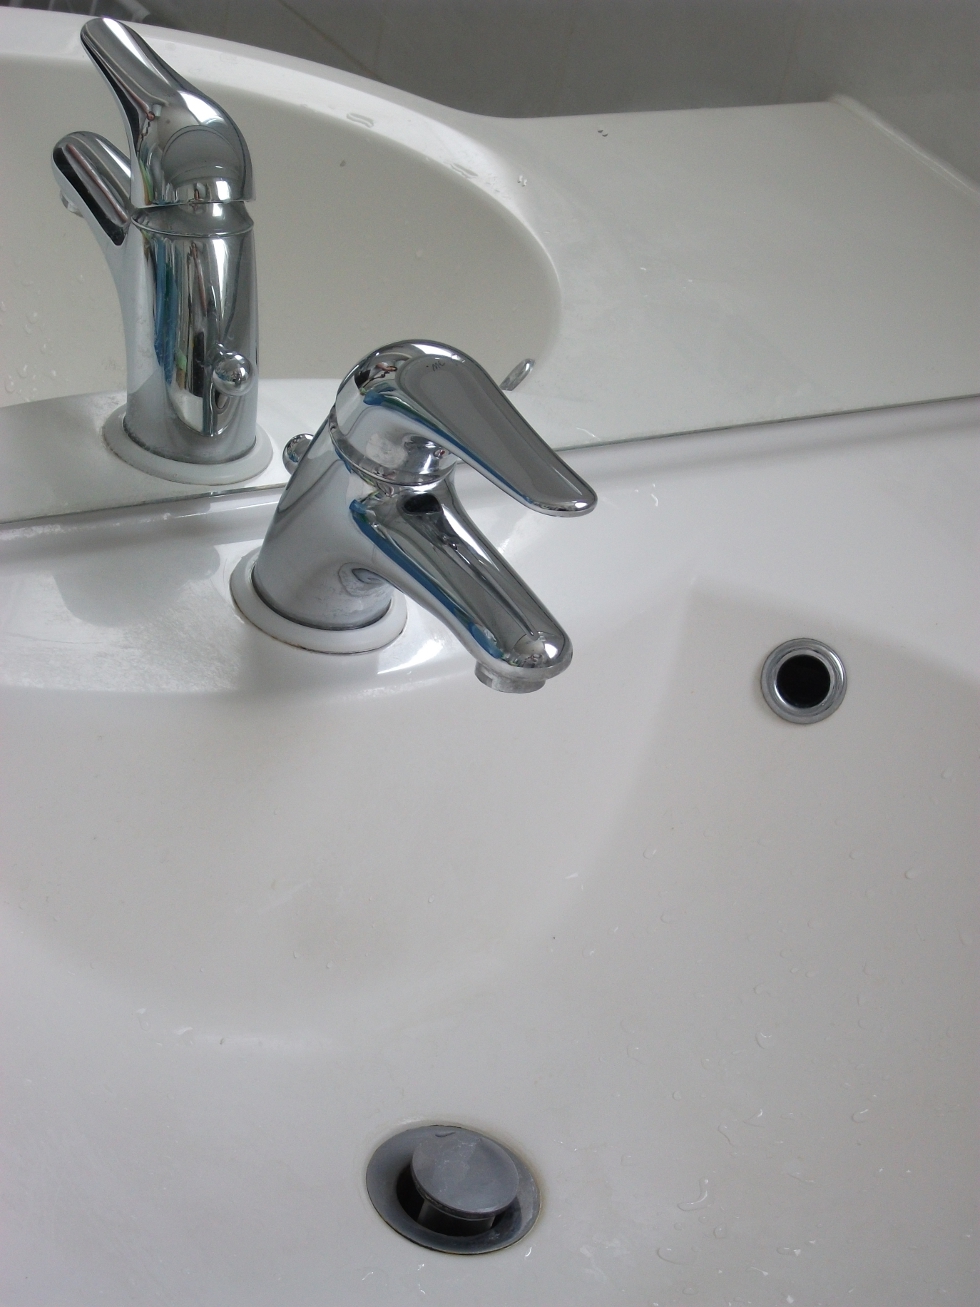 Le mitigeur est un robinet constitué d'un levier unique. © , CC BY-SA 3.0, Wikimedia Commons